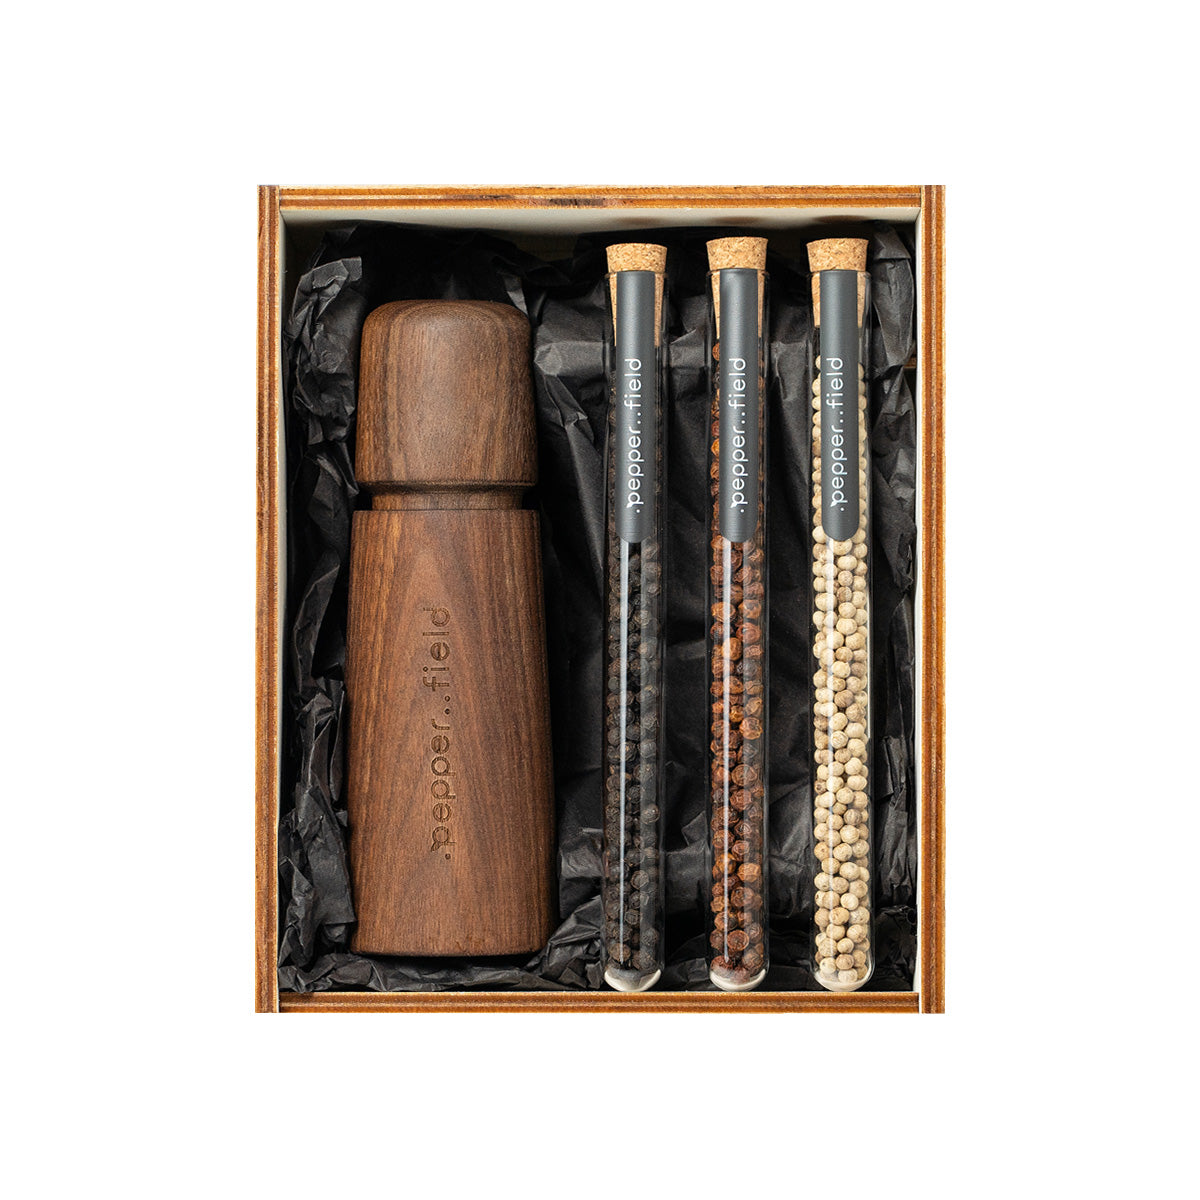 Macinino scandinavo con set di provette con pepe Kampot in confezione regalo in legno (3x10g)